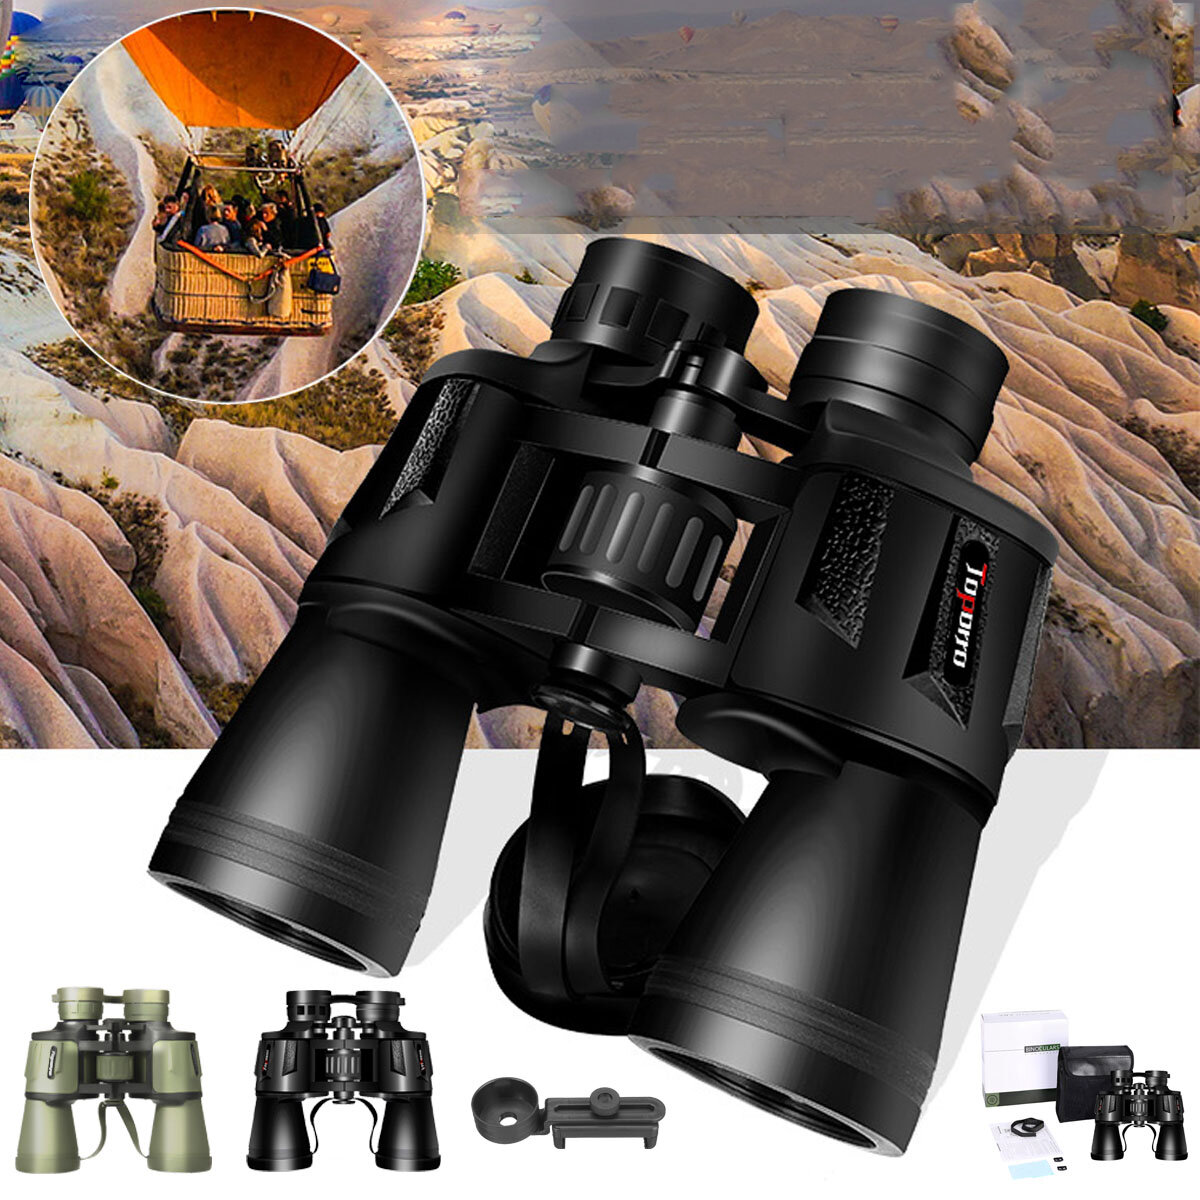 20X50 Hochleistungs-Fernglas Professionelles HD-Teleskop mit Nachtsicht für Outdoor-Camping und Reisen.